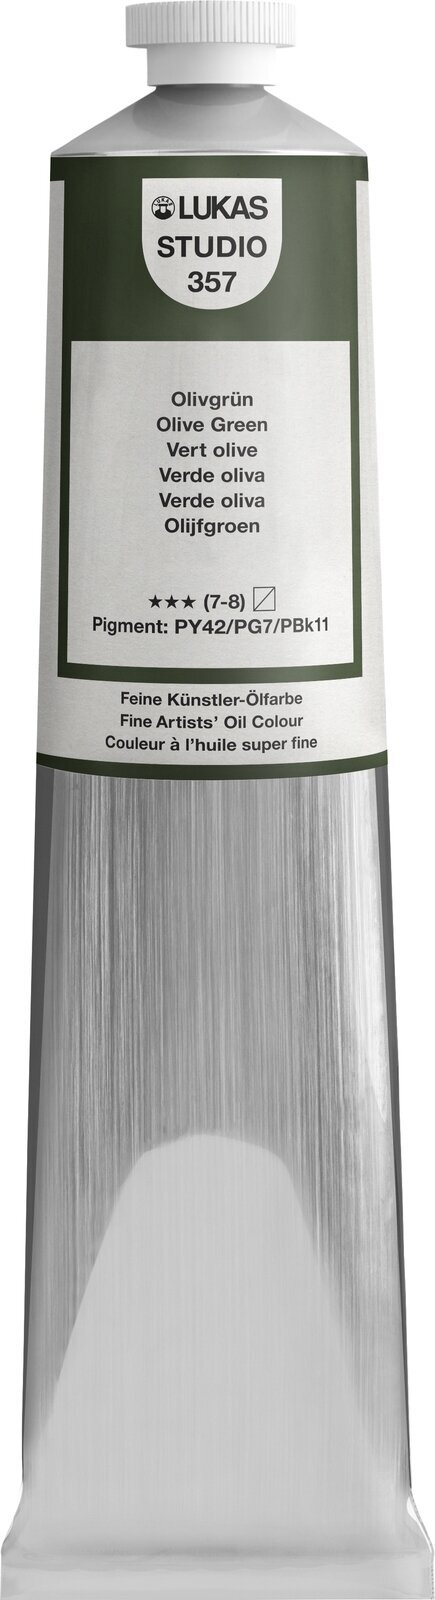 Peinture à l'huile Lukas Studio Oil Paint Aluminium Tube Peinture à l'huile Olive Green 200 ml 1 pc